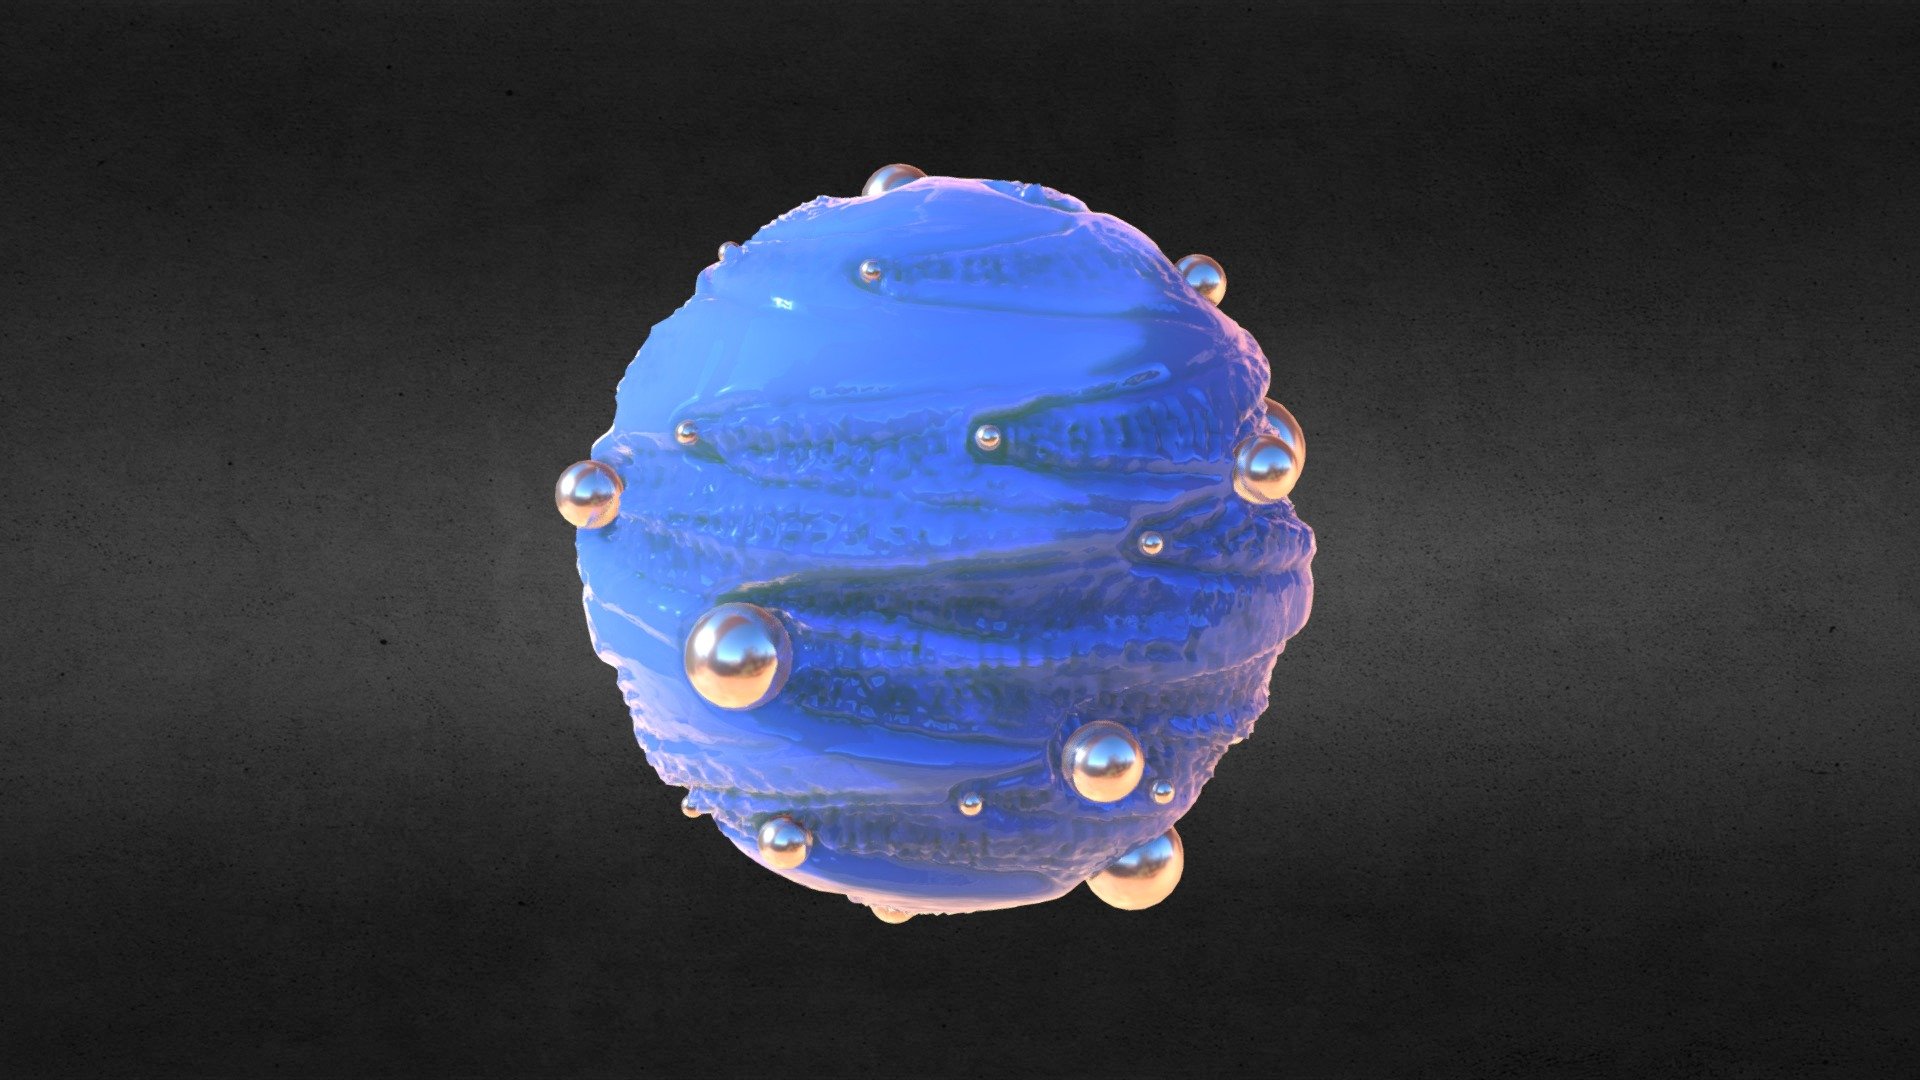 Water ripple planet (printable) - Water ripple planet (printable) - Buy Royalty Free 3D model by endike 3d model